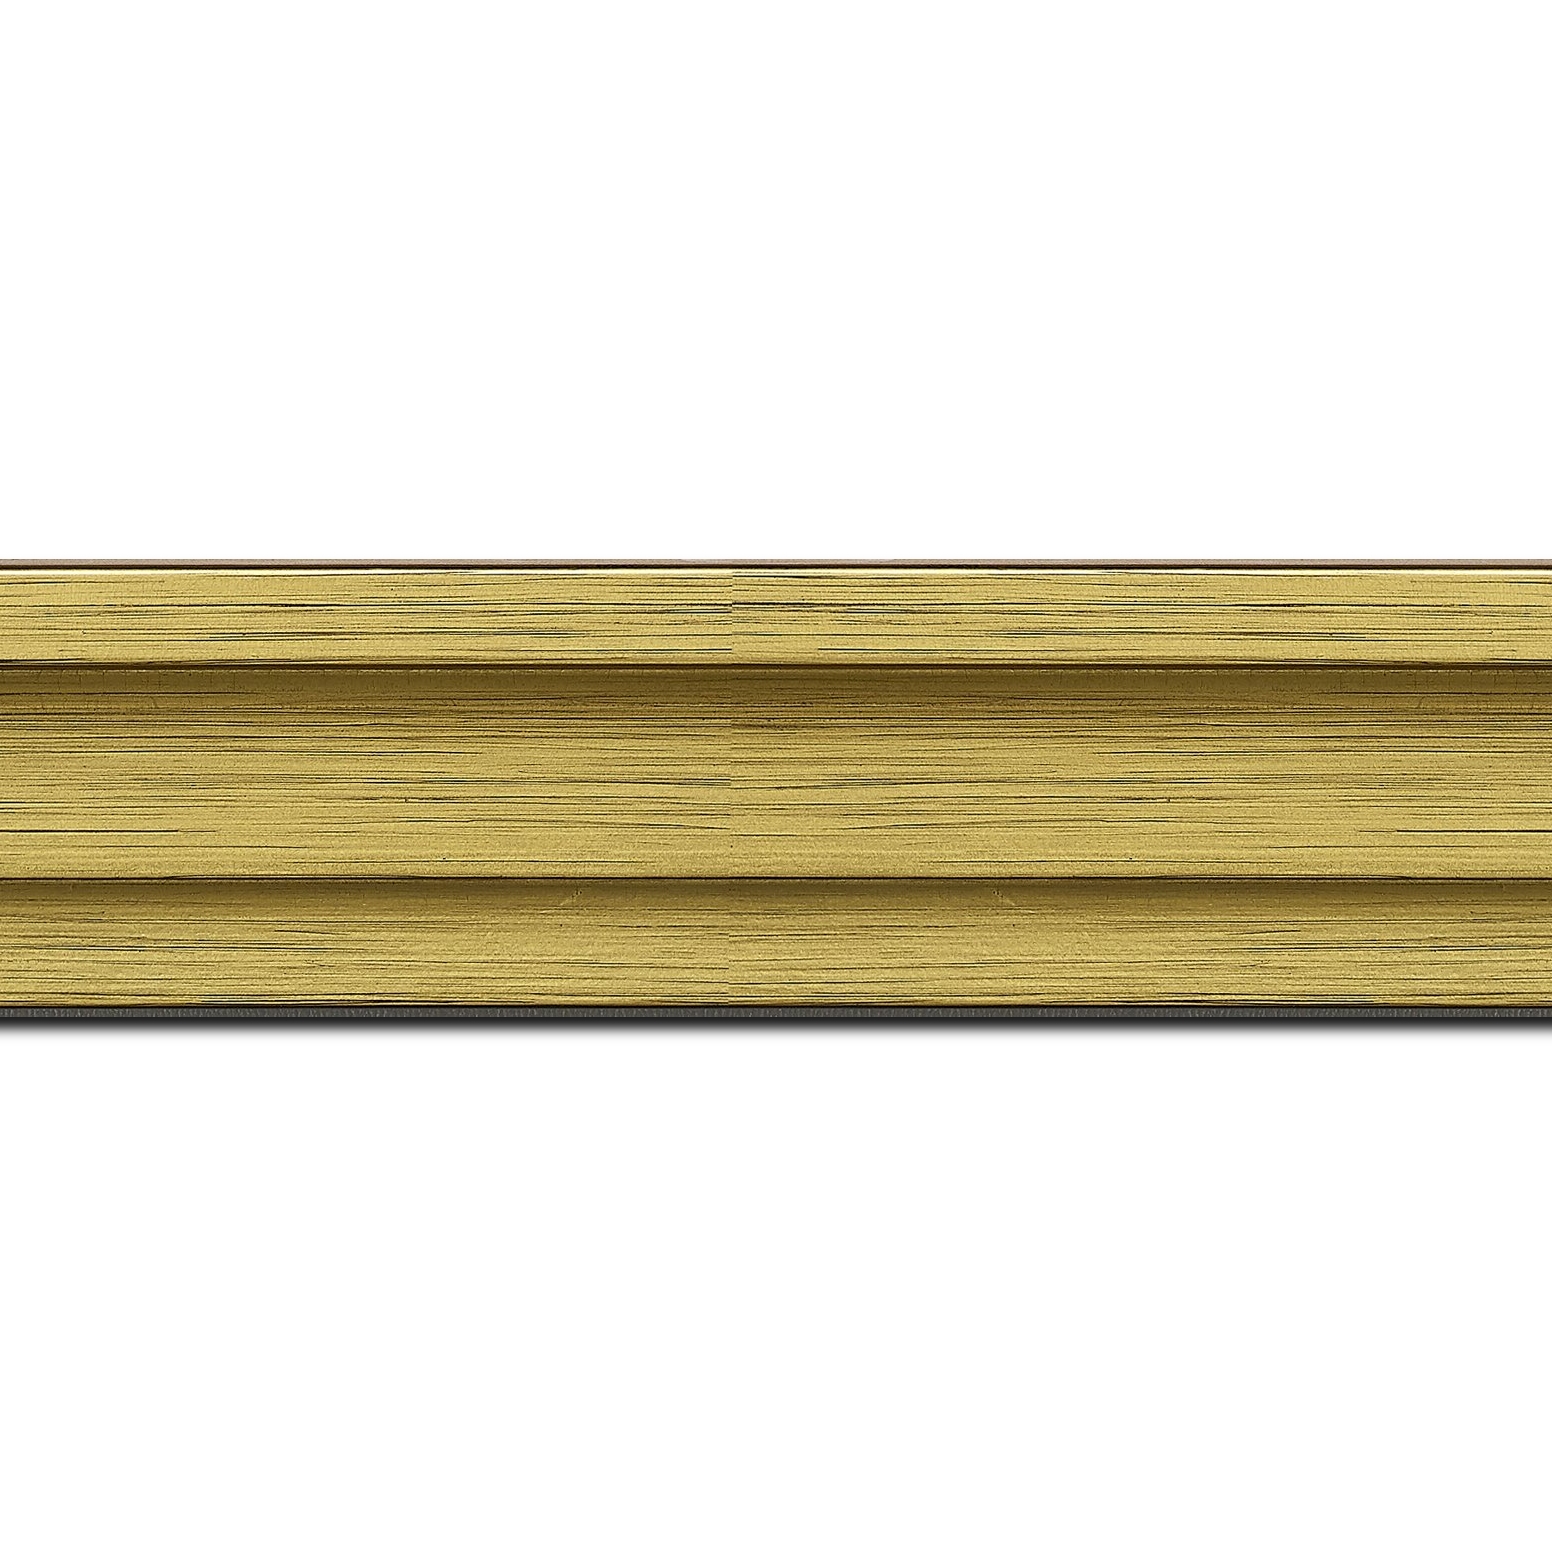 Pack par 12m, bois caisse américaine profil escalier largeur 4.4cm couleur or sur noir (spécialement conçu pour les châssis d'une épaisseur jusqu’à 2.5cm )(longueur baguette pouvant varier entre 2.40m et 3m selon arrivage des bois)